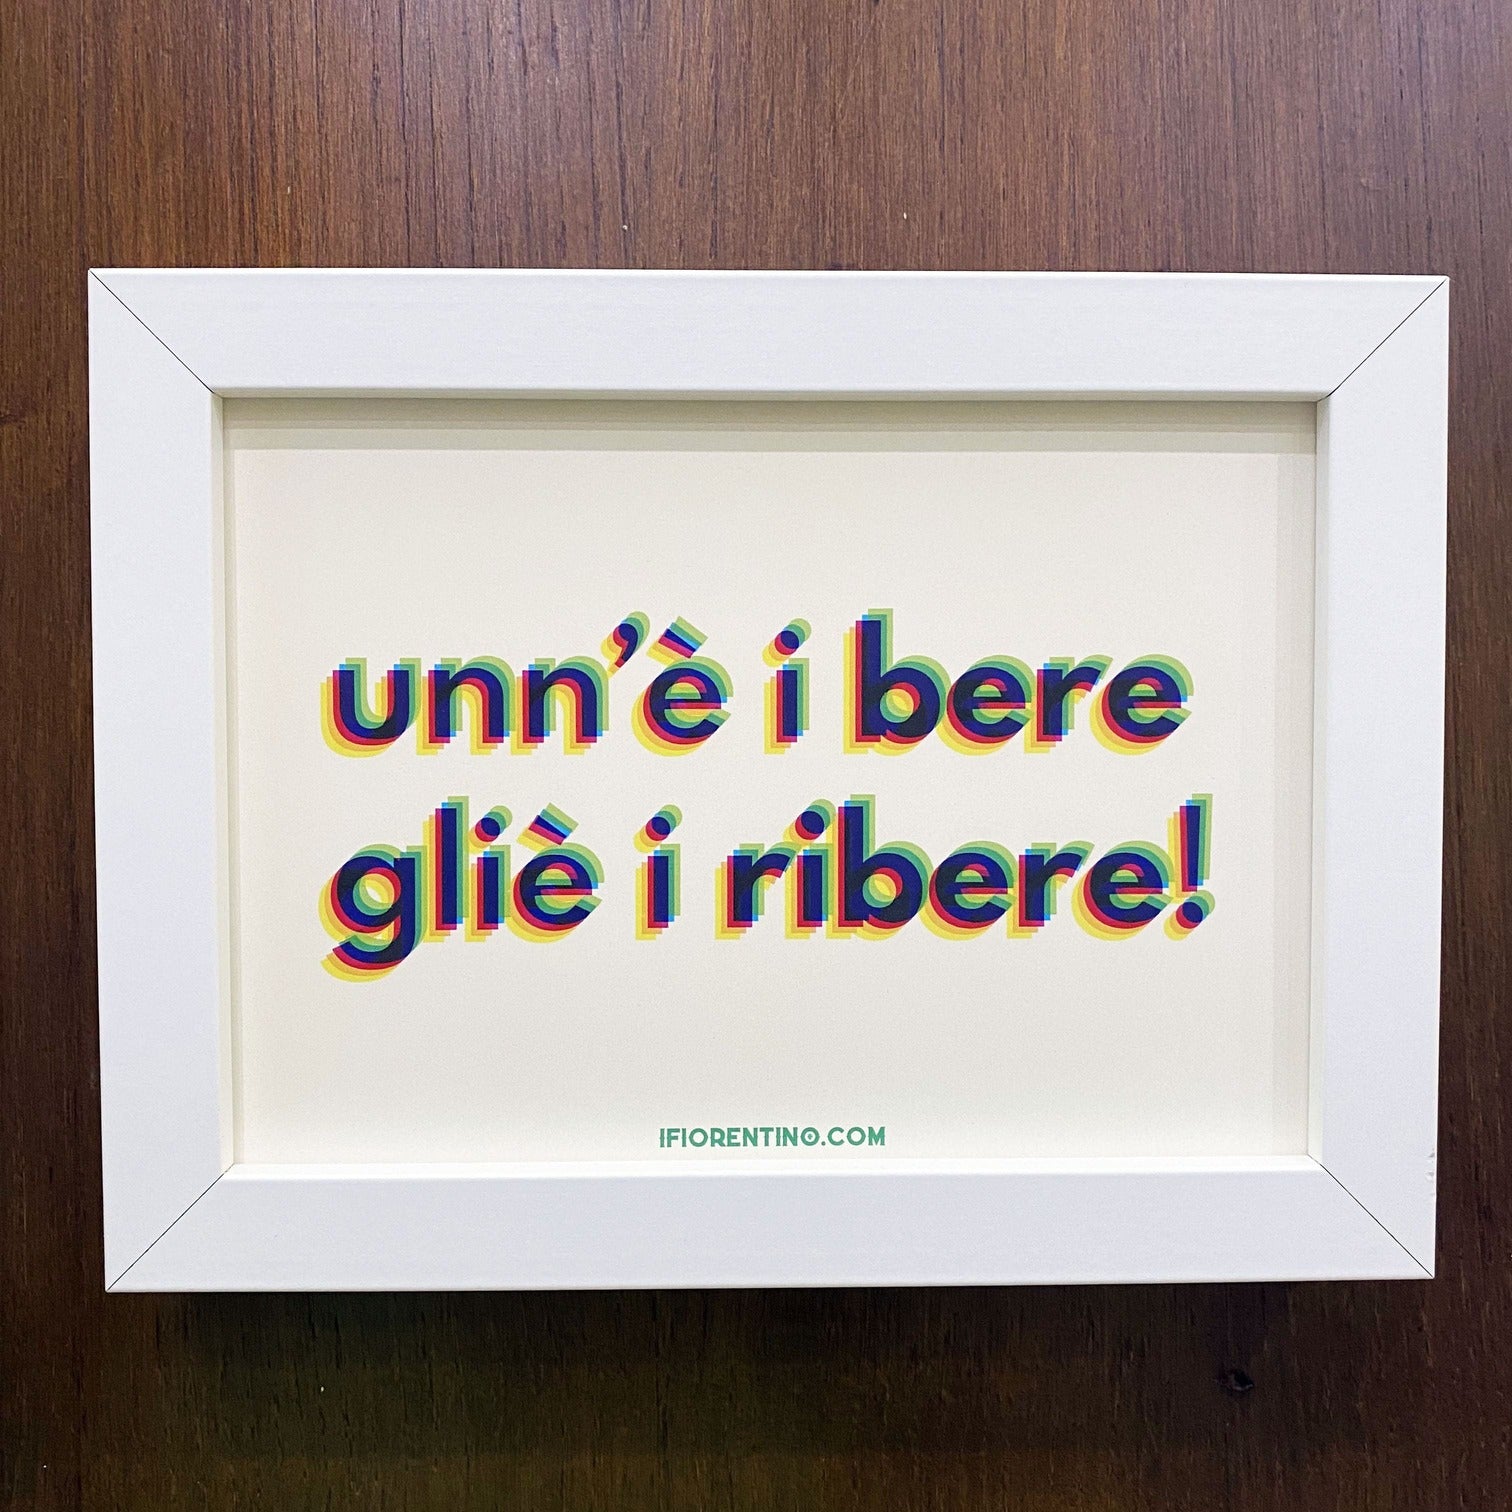 UNN'È I'BERE GLIÈ I'RIBERE STAMPA + CORNICE - poster fiorentini - poster firenze - regalo fiorentino - fiorentino  - foppeddittelo